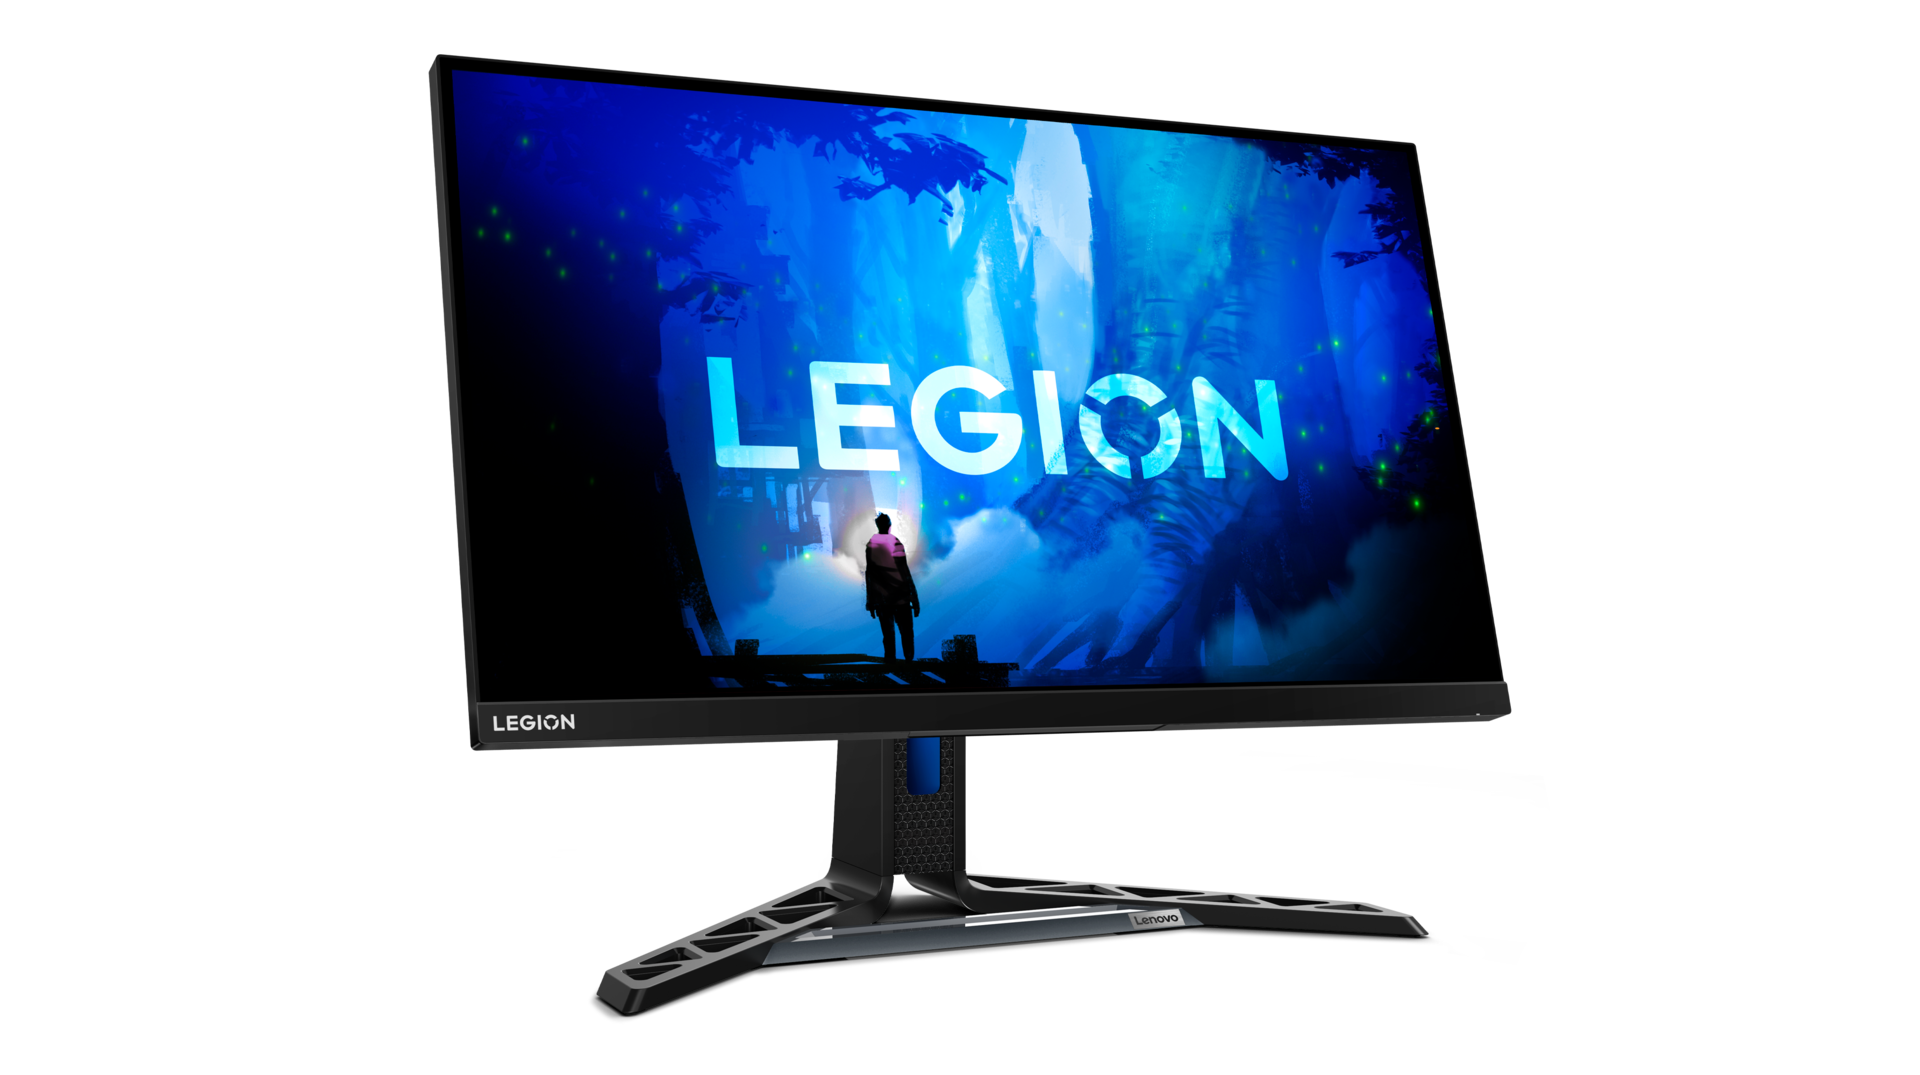 Lenovo ha presentato due monitor Legion con risoluzione QHD, fino a 280 Hz e calibrazione di fabbrica, con un prezzo a partire da 399 dollari.